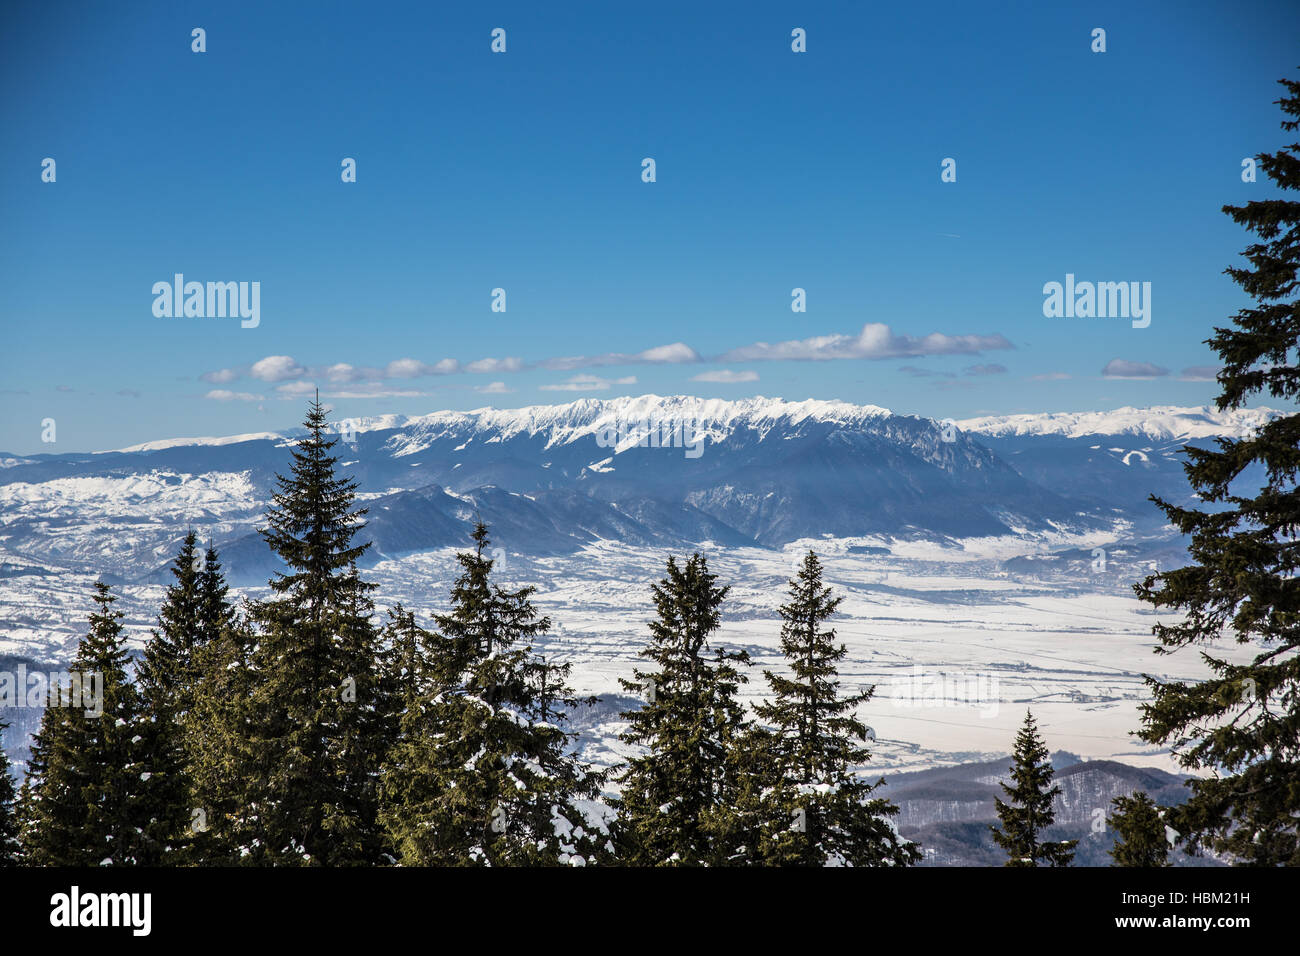 Winter scene in Poiana Brasov Stock Photo - Alamy